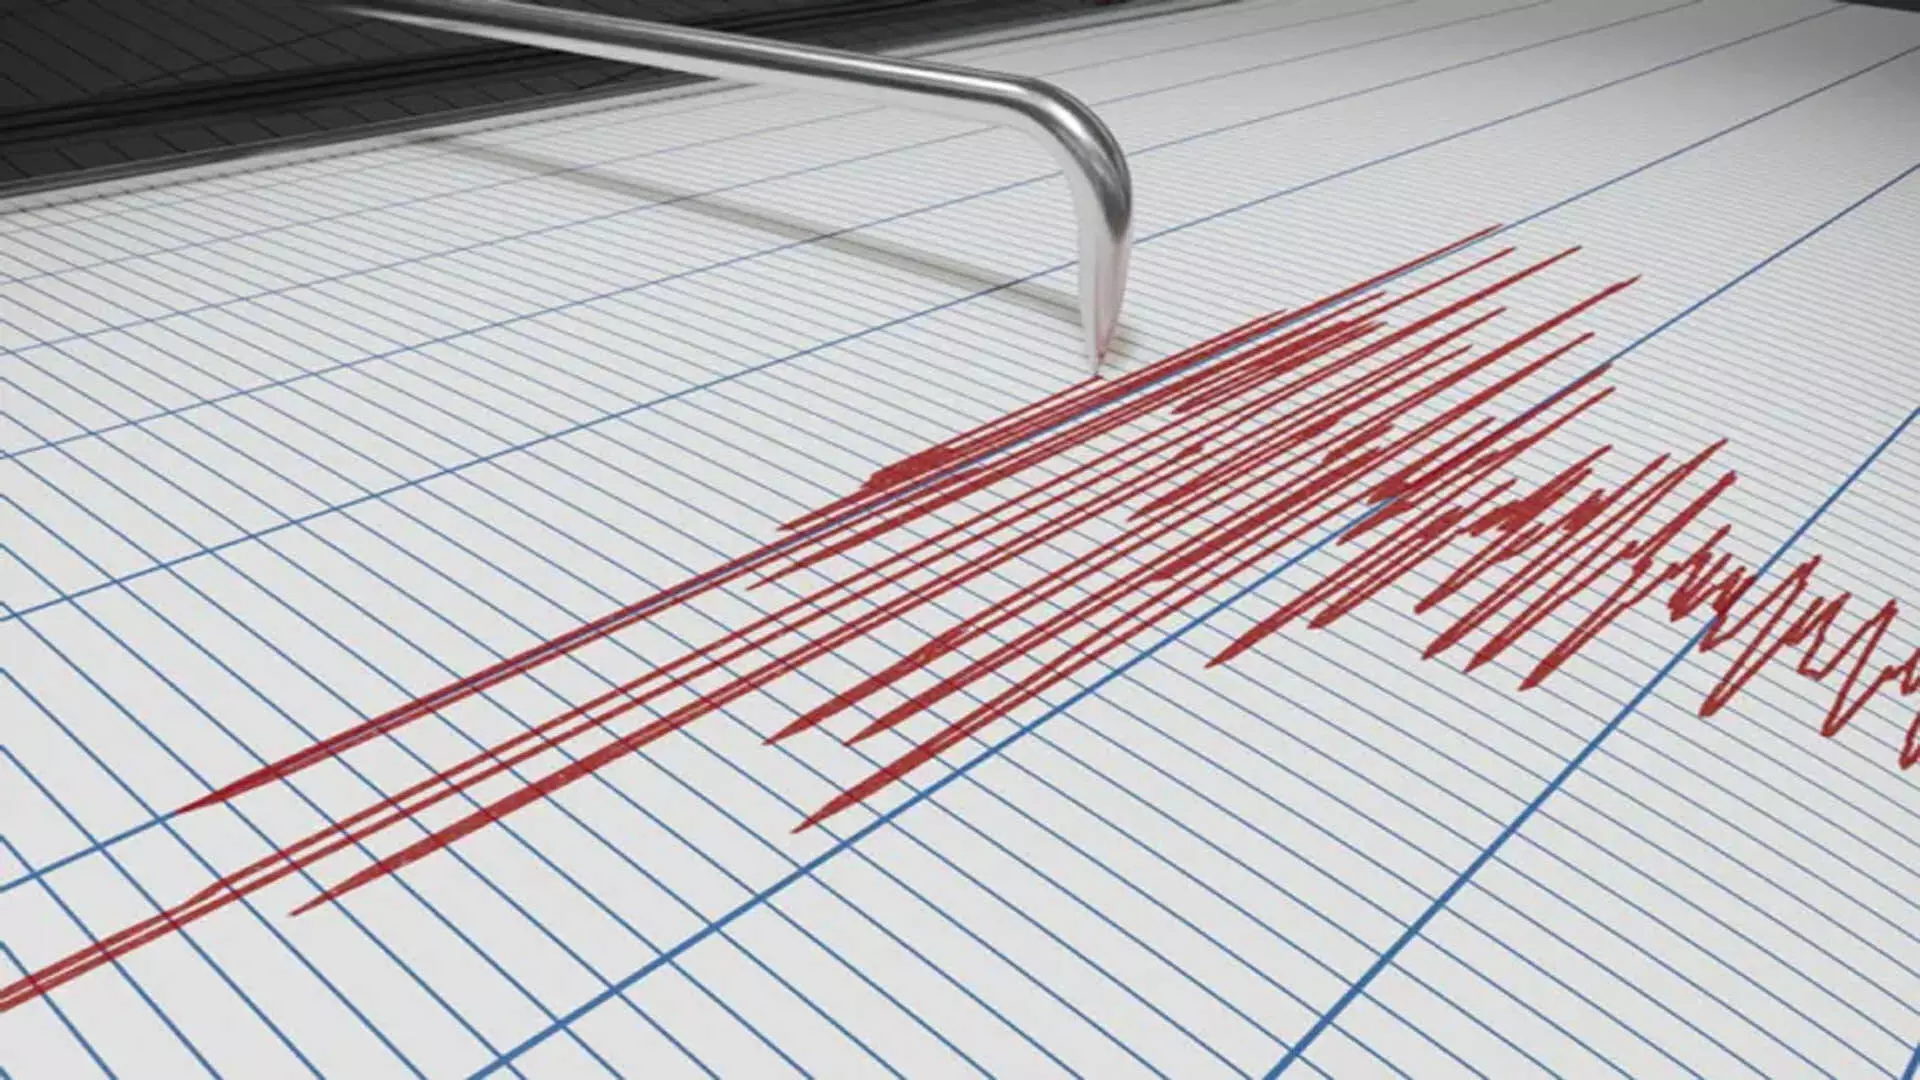 Mild earthquake: किश्तवाड़ में हल्का भूकंप